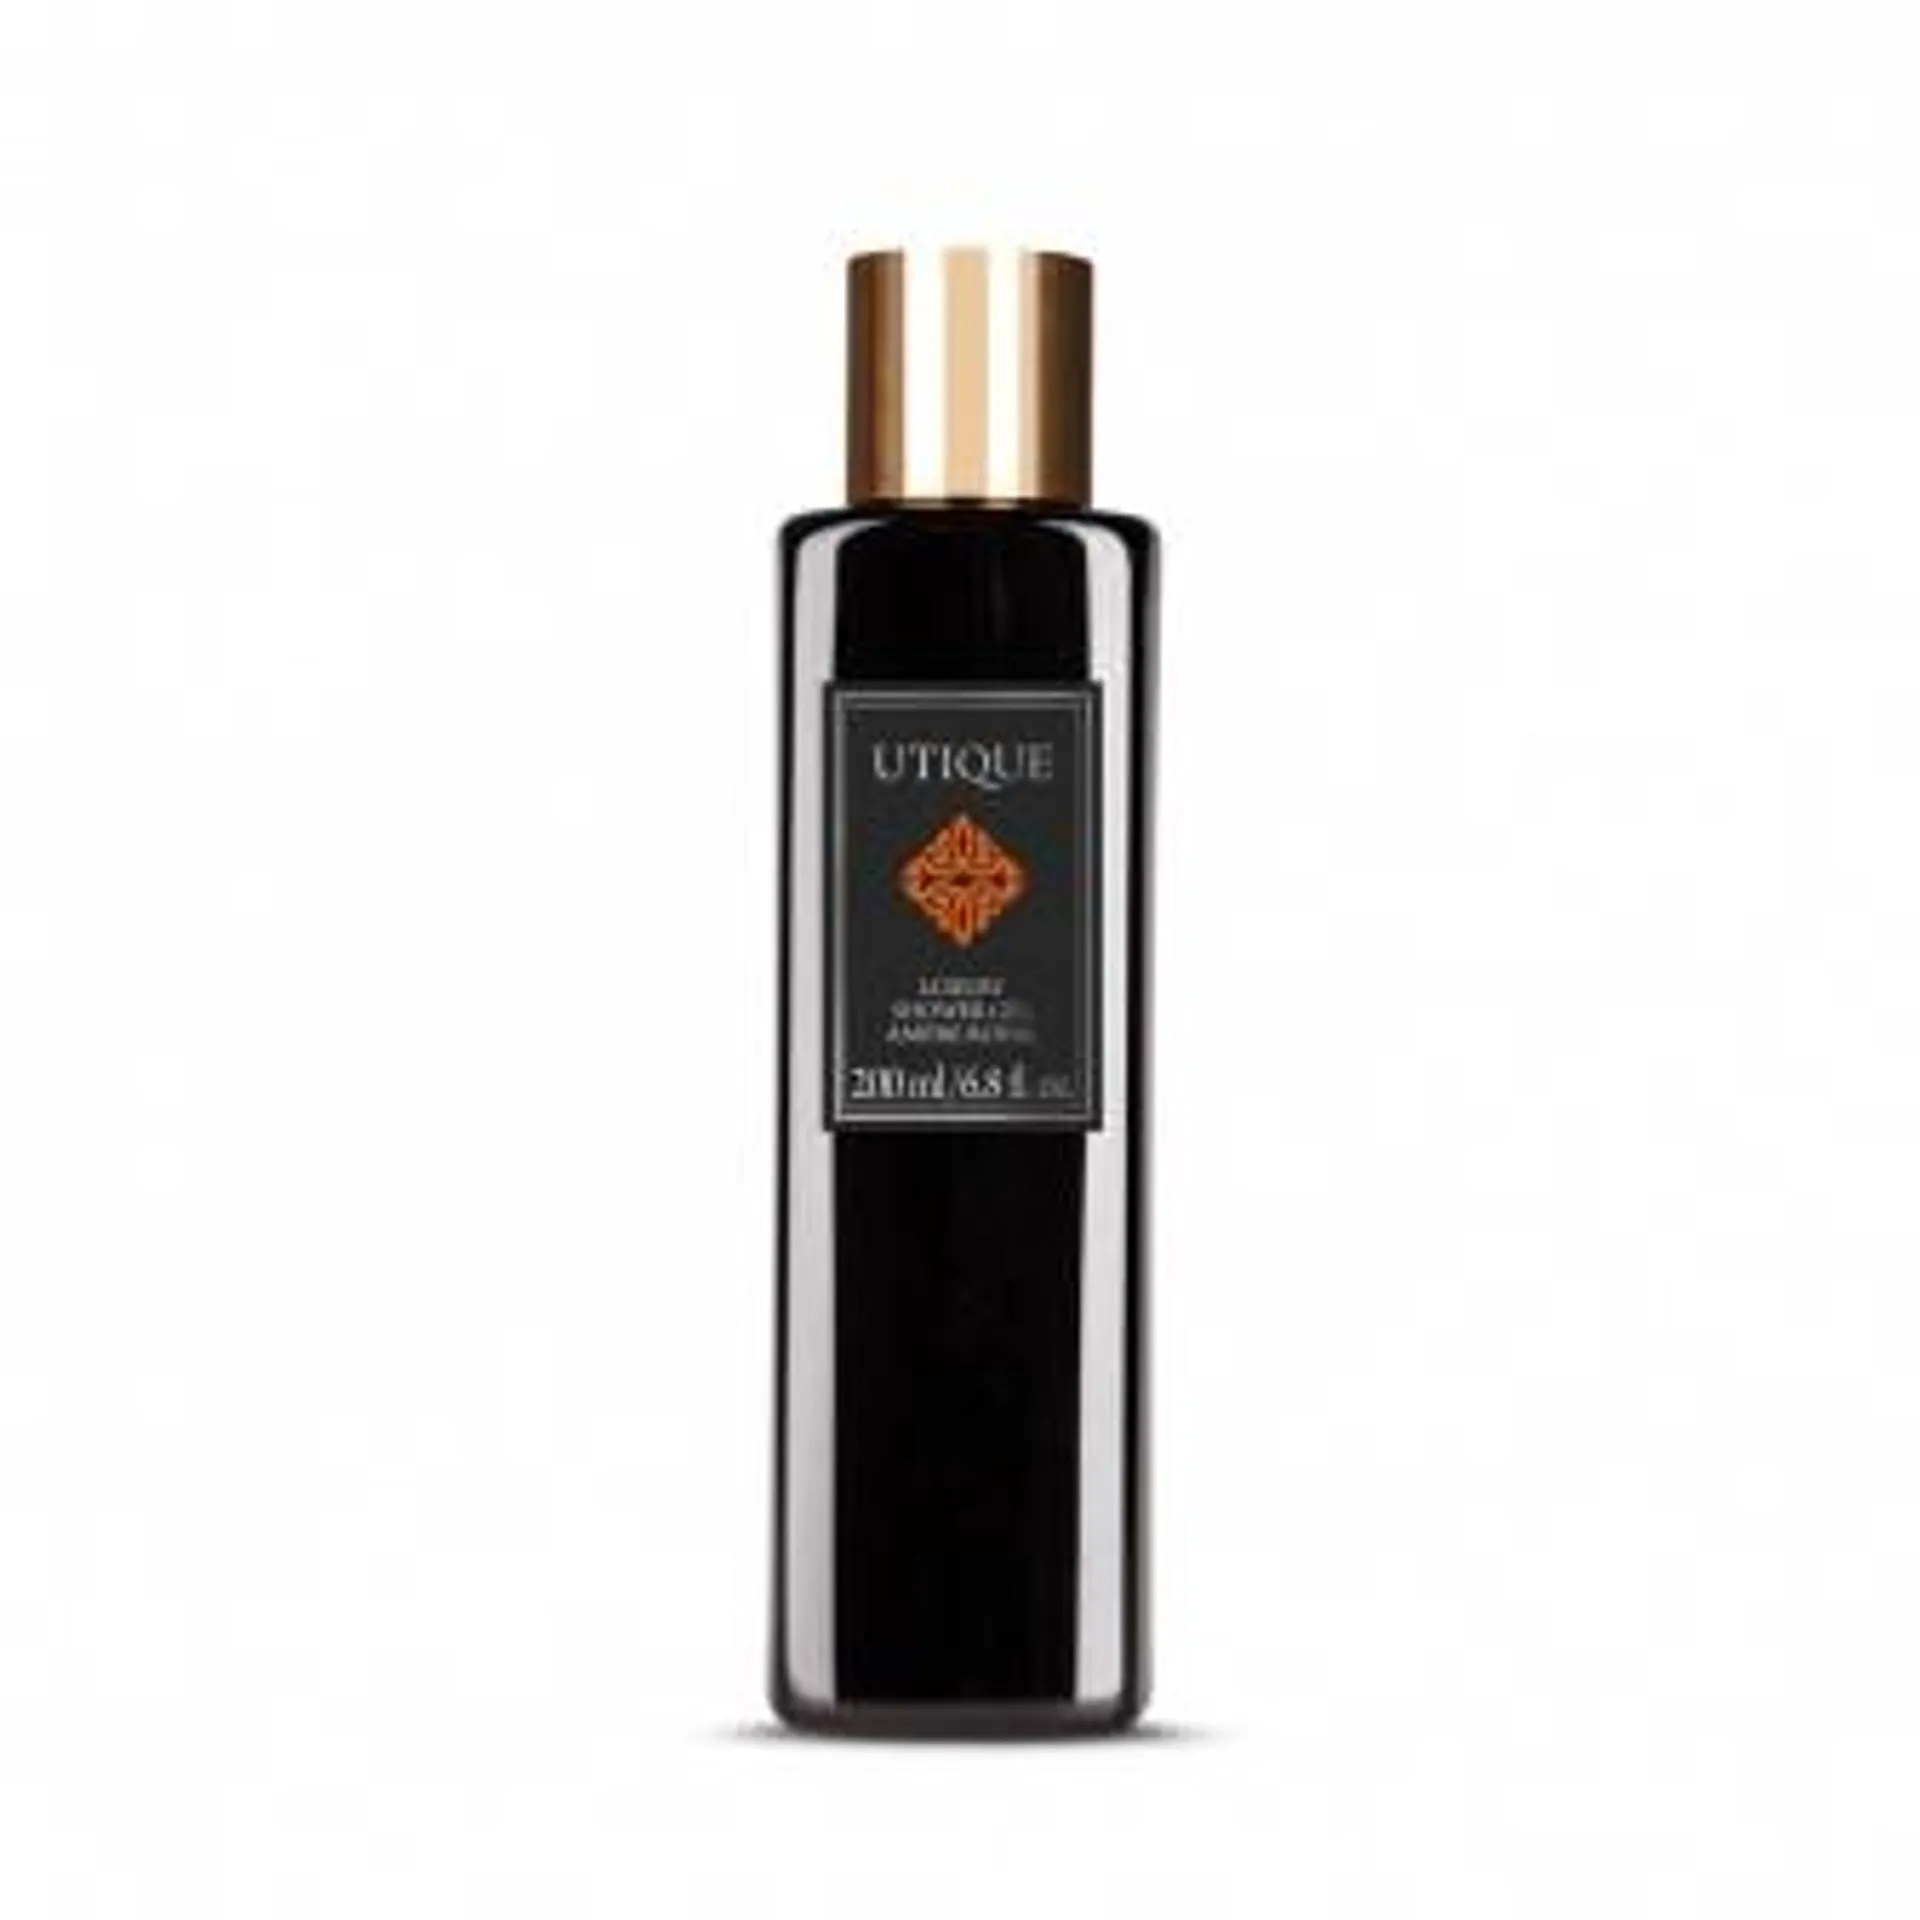 Gel de Banho de Luxo Ambre Royal (200 ml) - UTIQUE